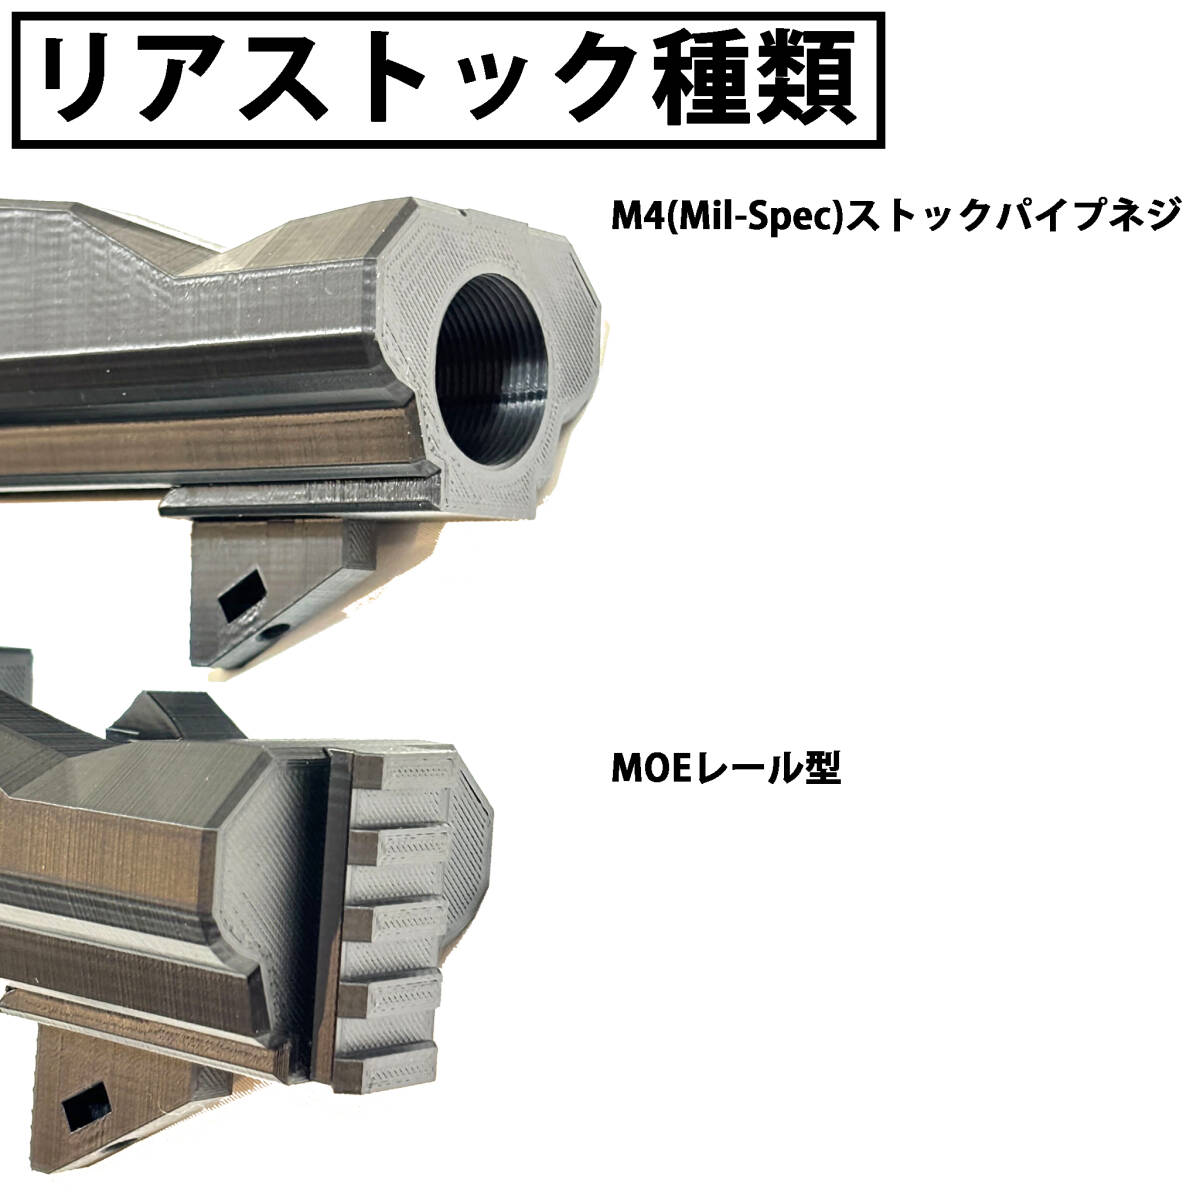 東京マルイ VSR-10 M4シャーシキット ABS_画像4